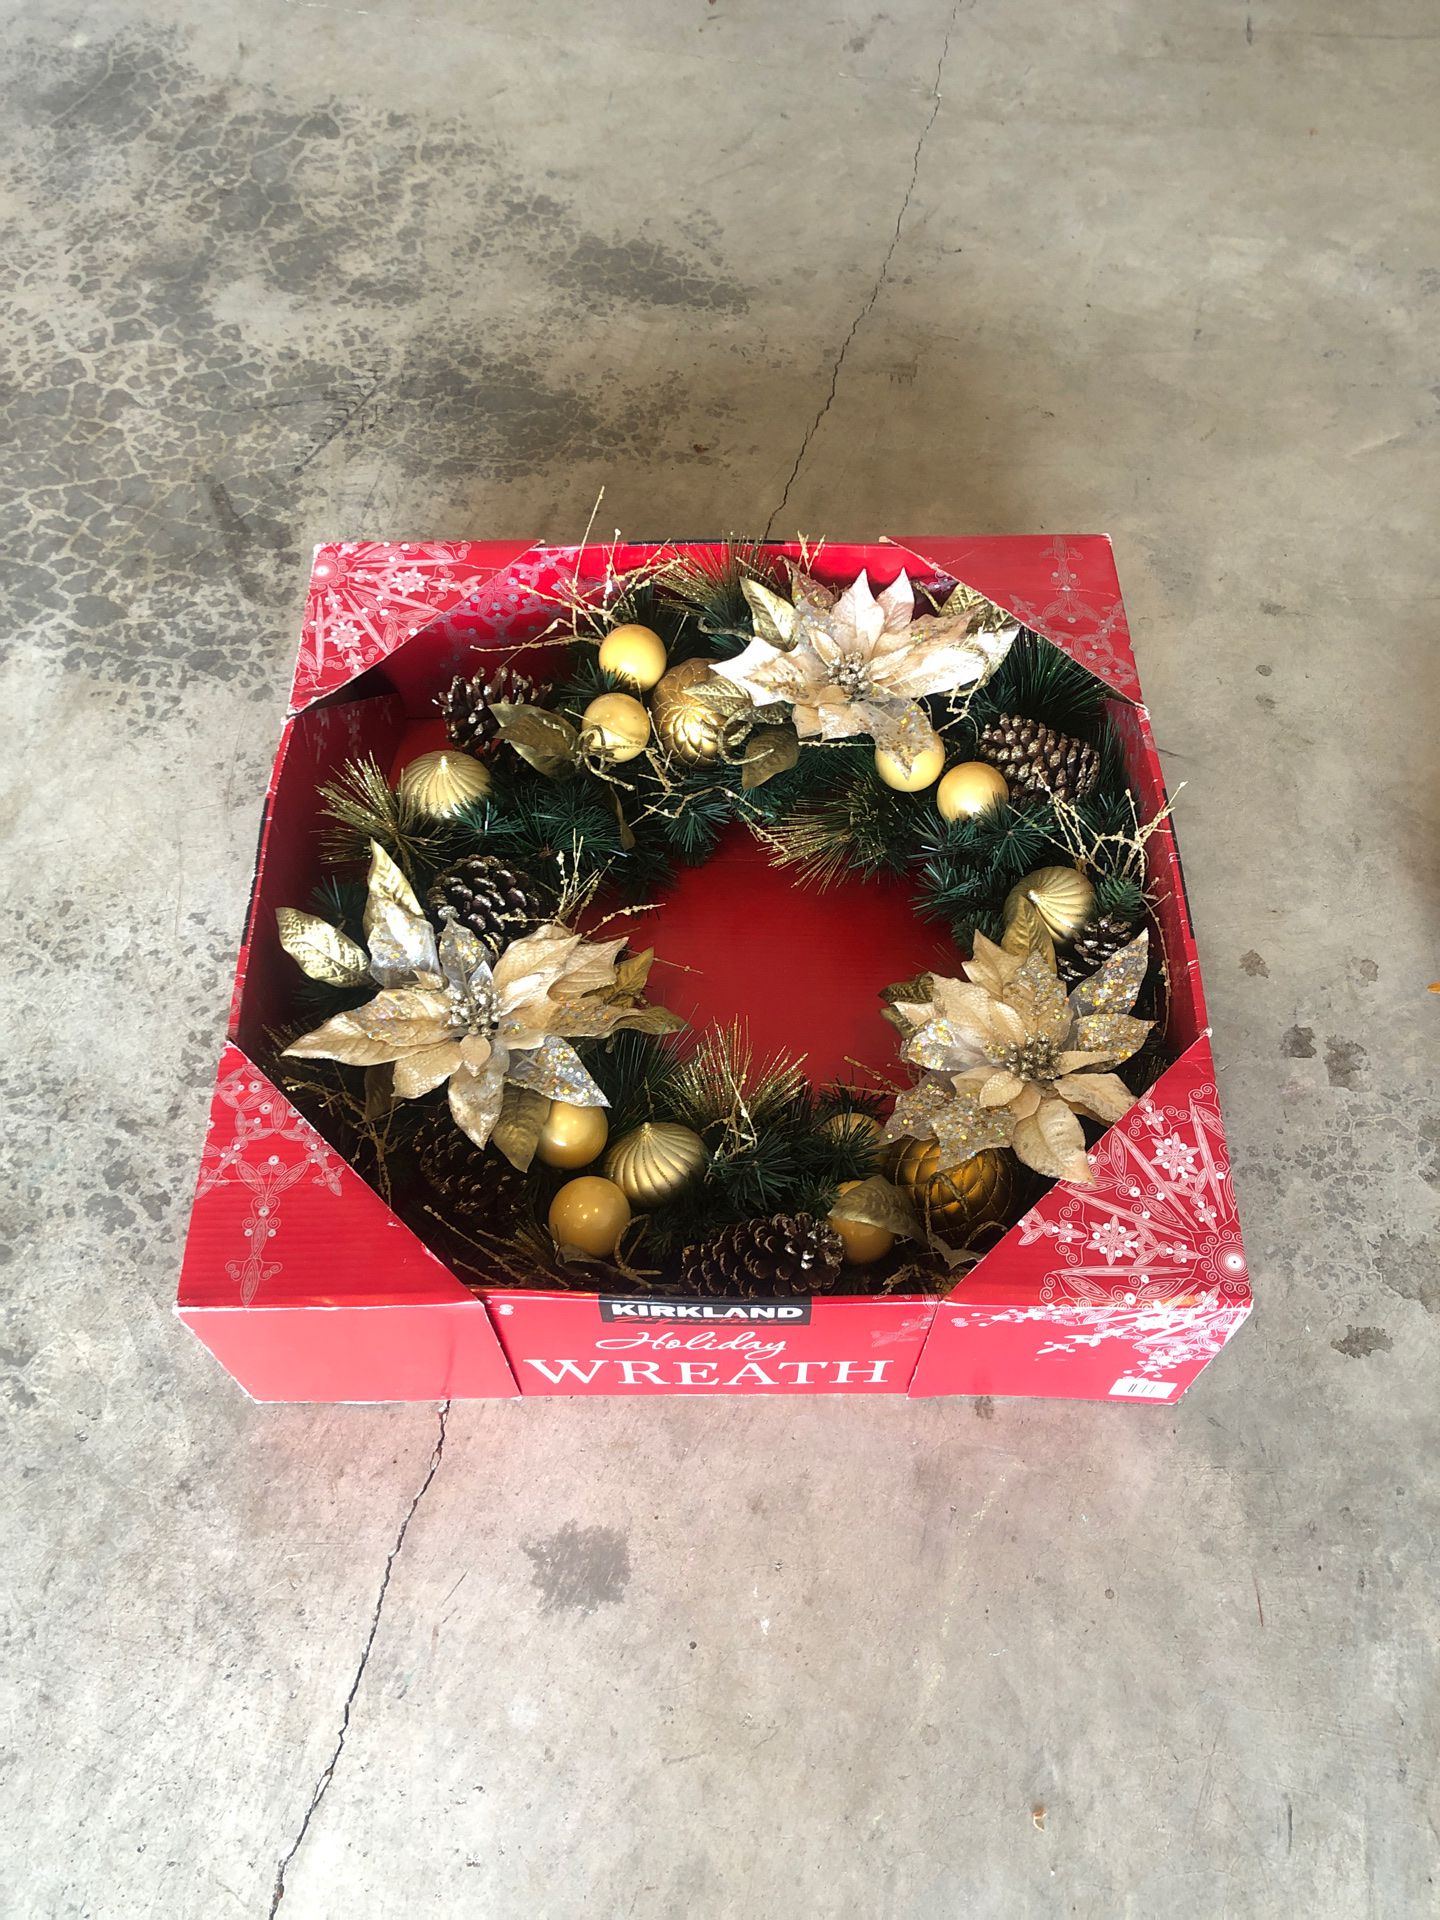 Costco Xmas wreath